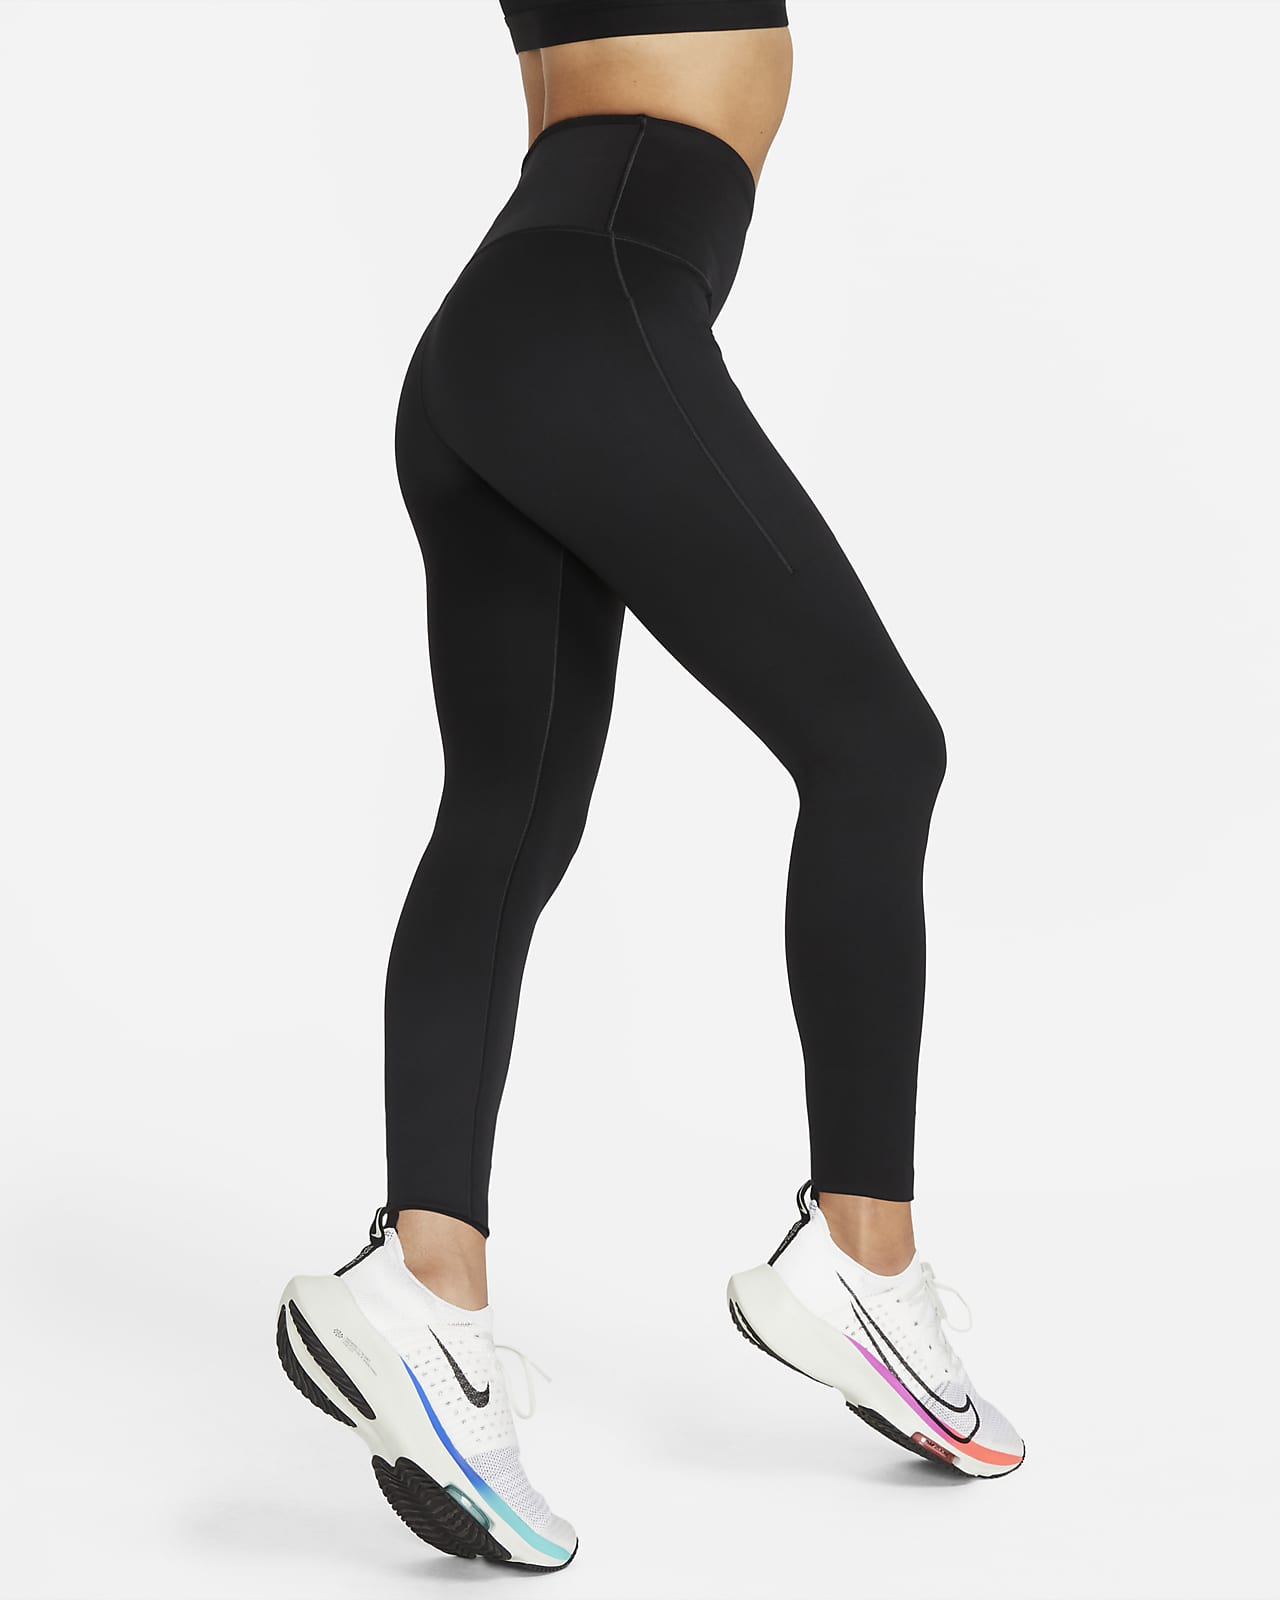 【ナイキ公式】ゴー ウィメンズ ファームサポート ハイウエスト 7/8 レギンス ポケット付き ブルー ウィメンズ M Nike Go Women's Firm-Support High-Waisted 7/8 Leggings with Pockets